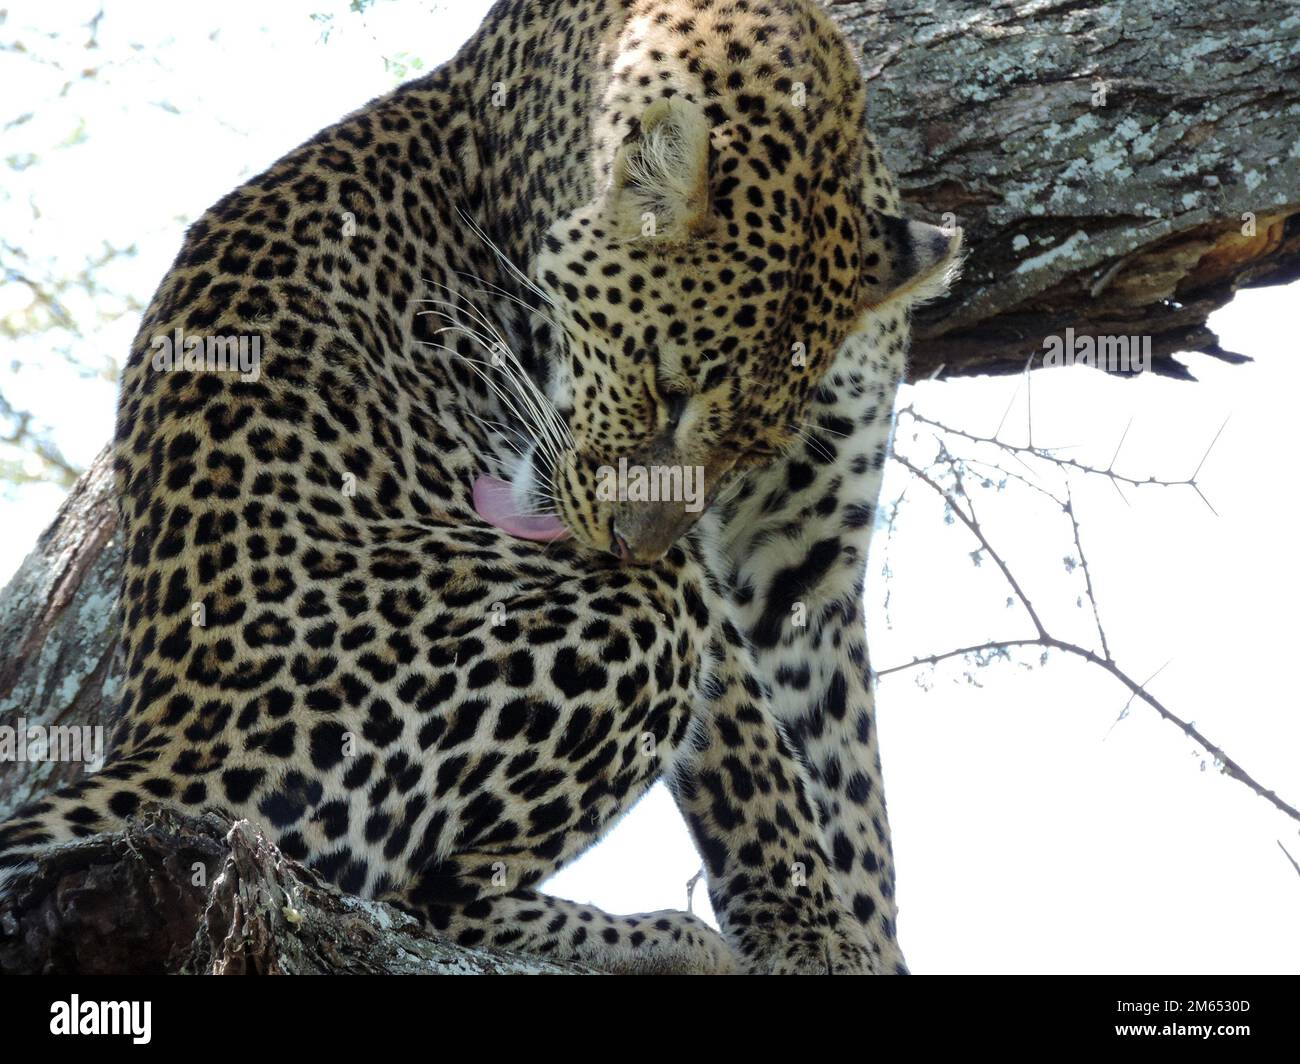 Léopard dans un arbre dans la savane Tanzanie Afrique de l'est Banque D'Images